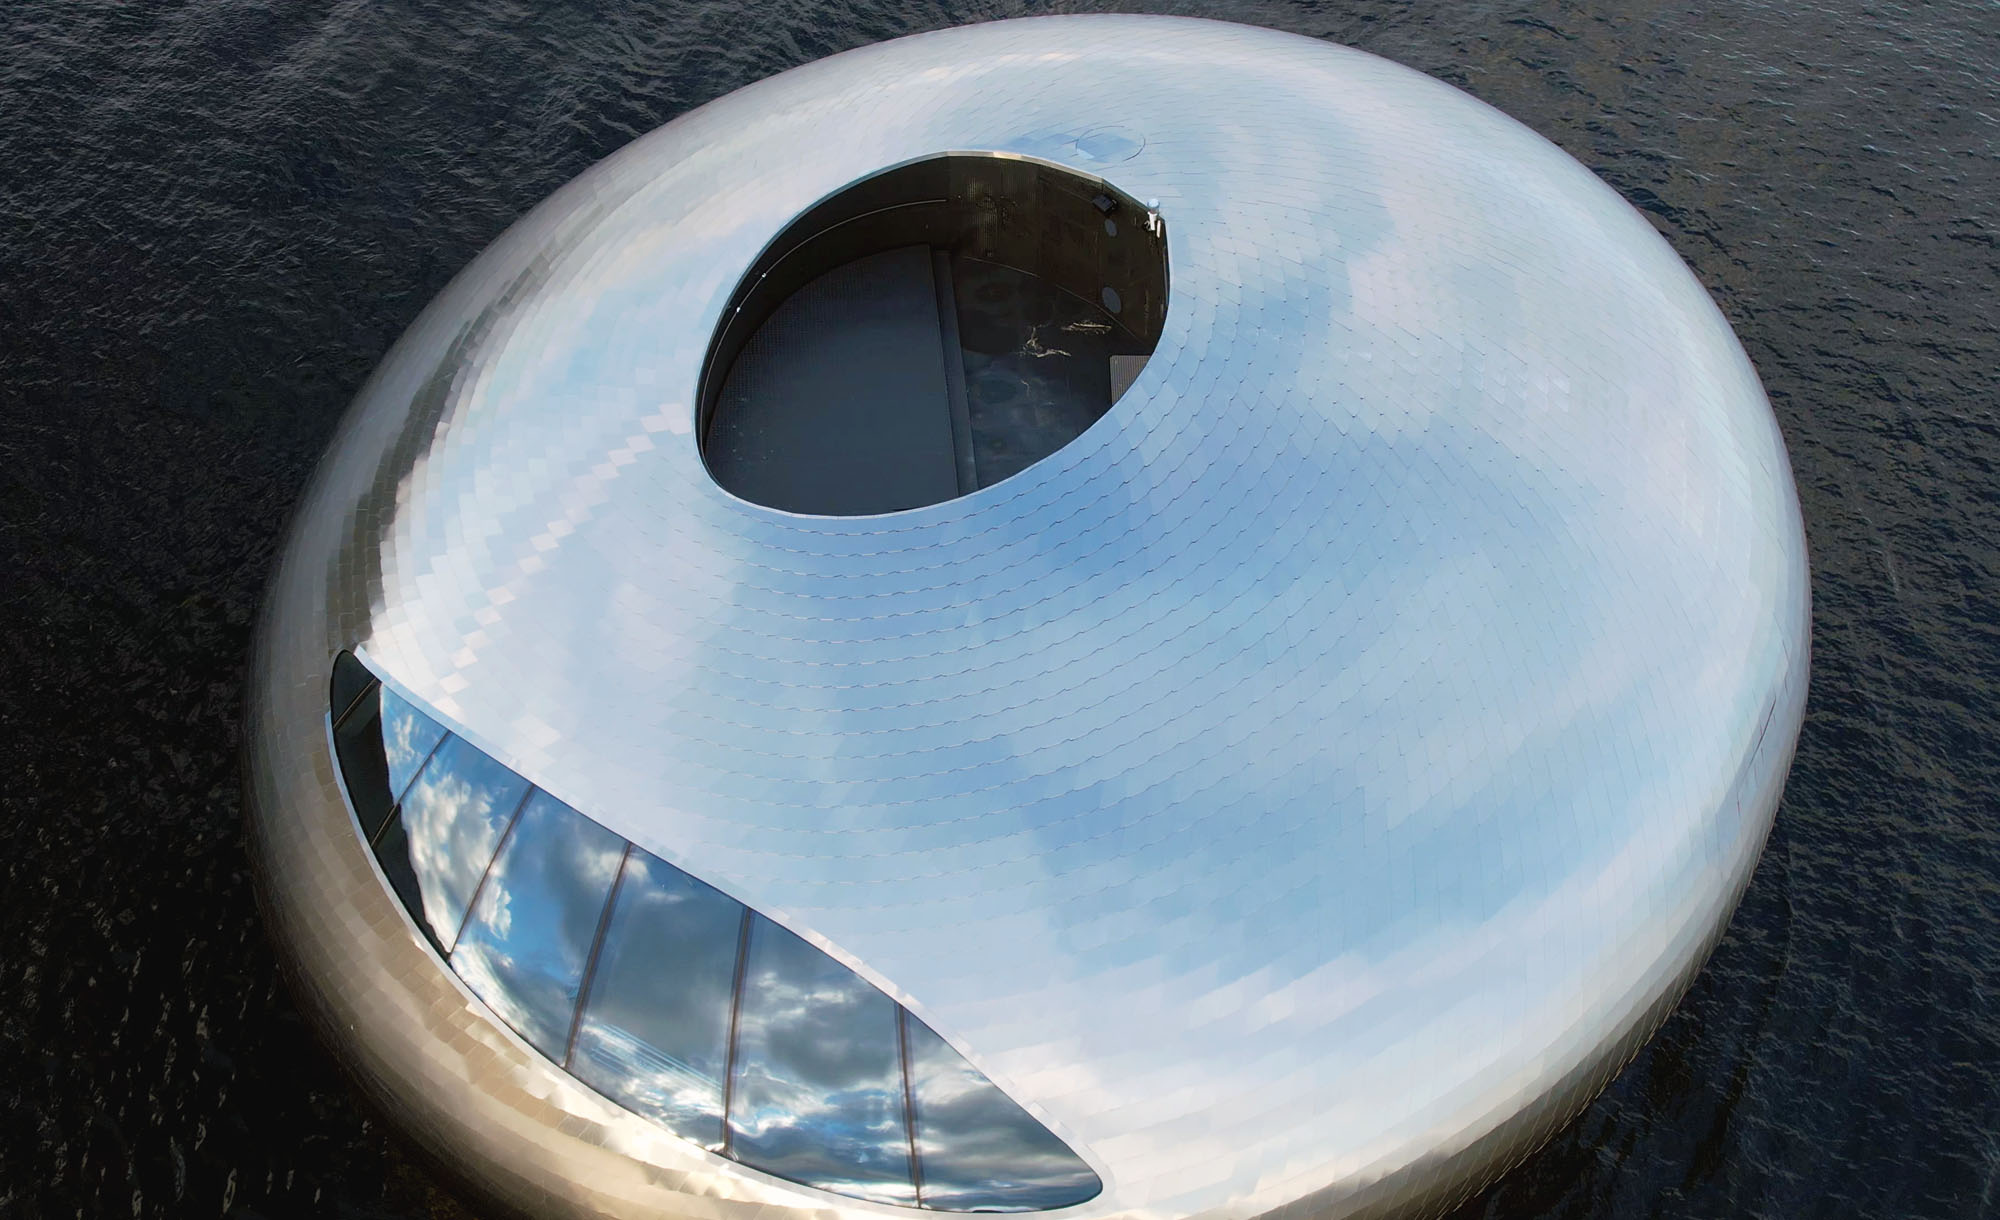 “Το μάτι του σολωμού”: H εντυπωσιακή εμπειρία στην επιβλητική πλωτή κατασκευή στα φιορδ της Νορβηγίας